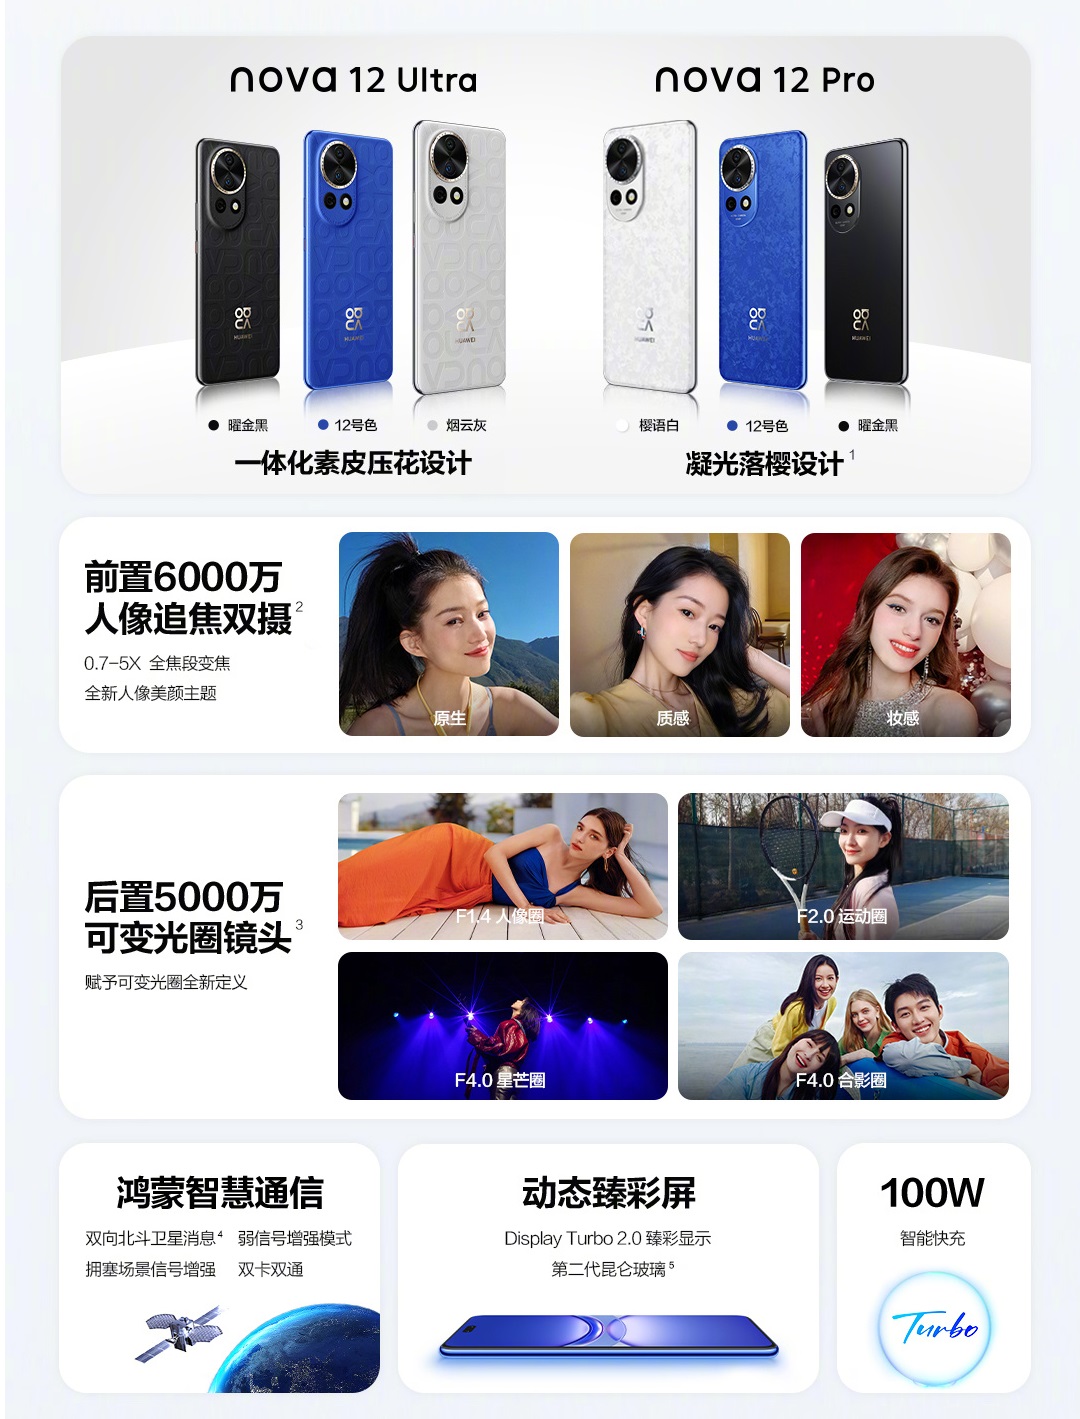 Huawei представила Nova 12 Pro и Nova 12 Ultra